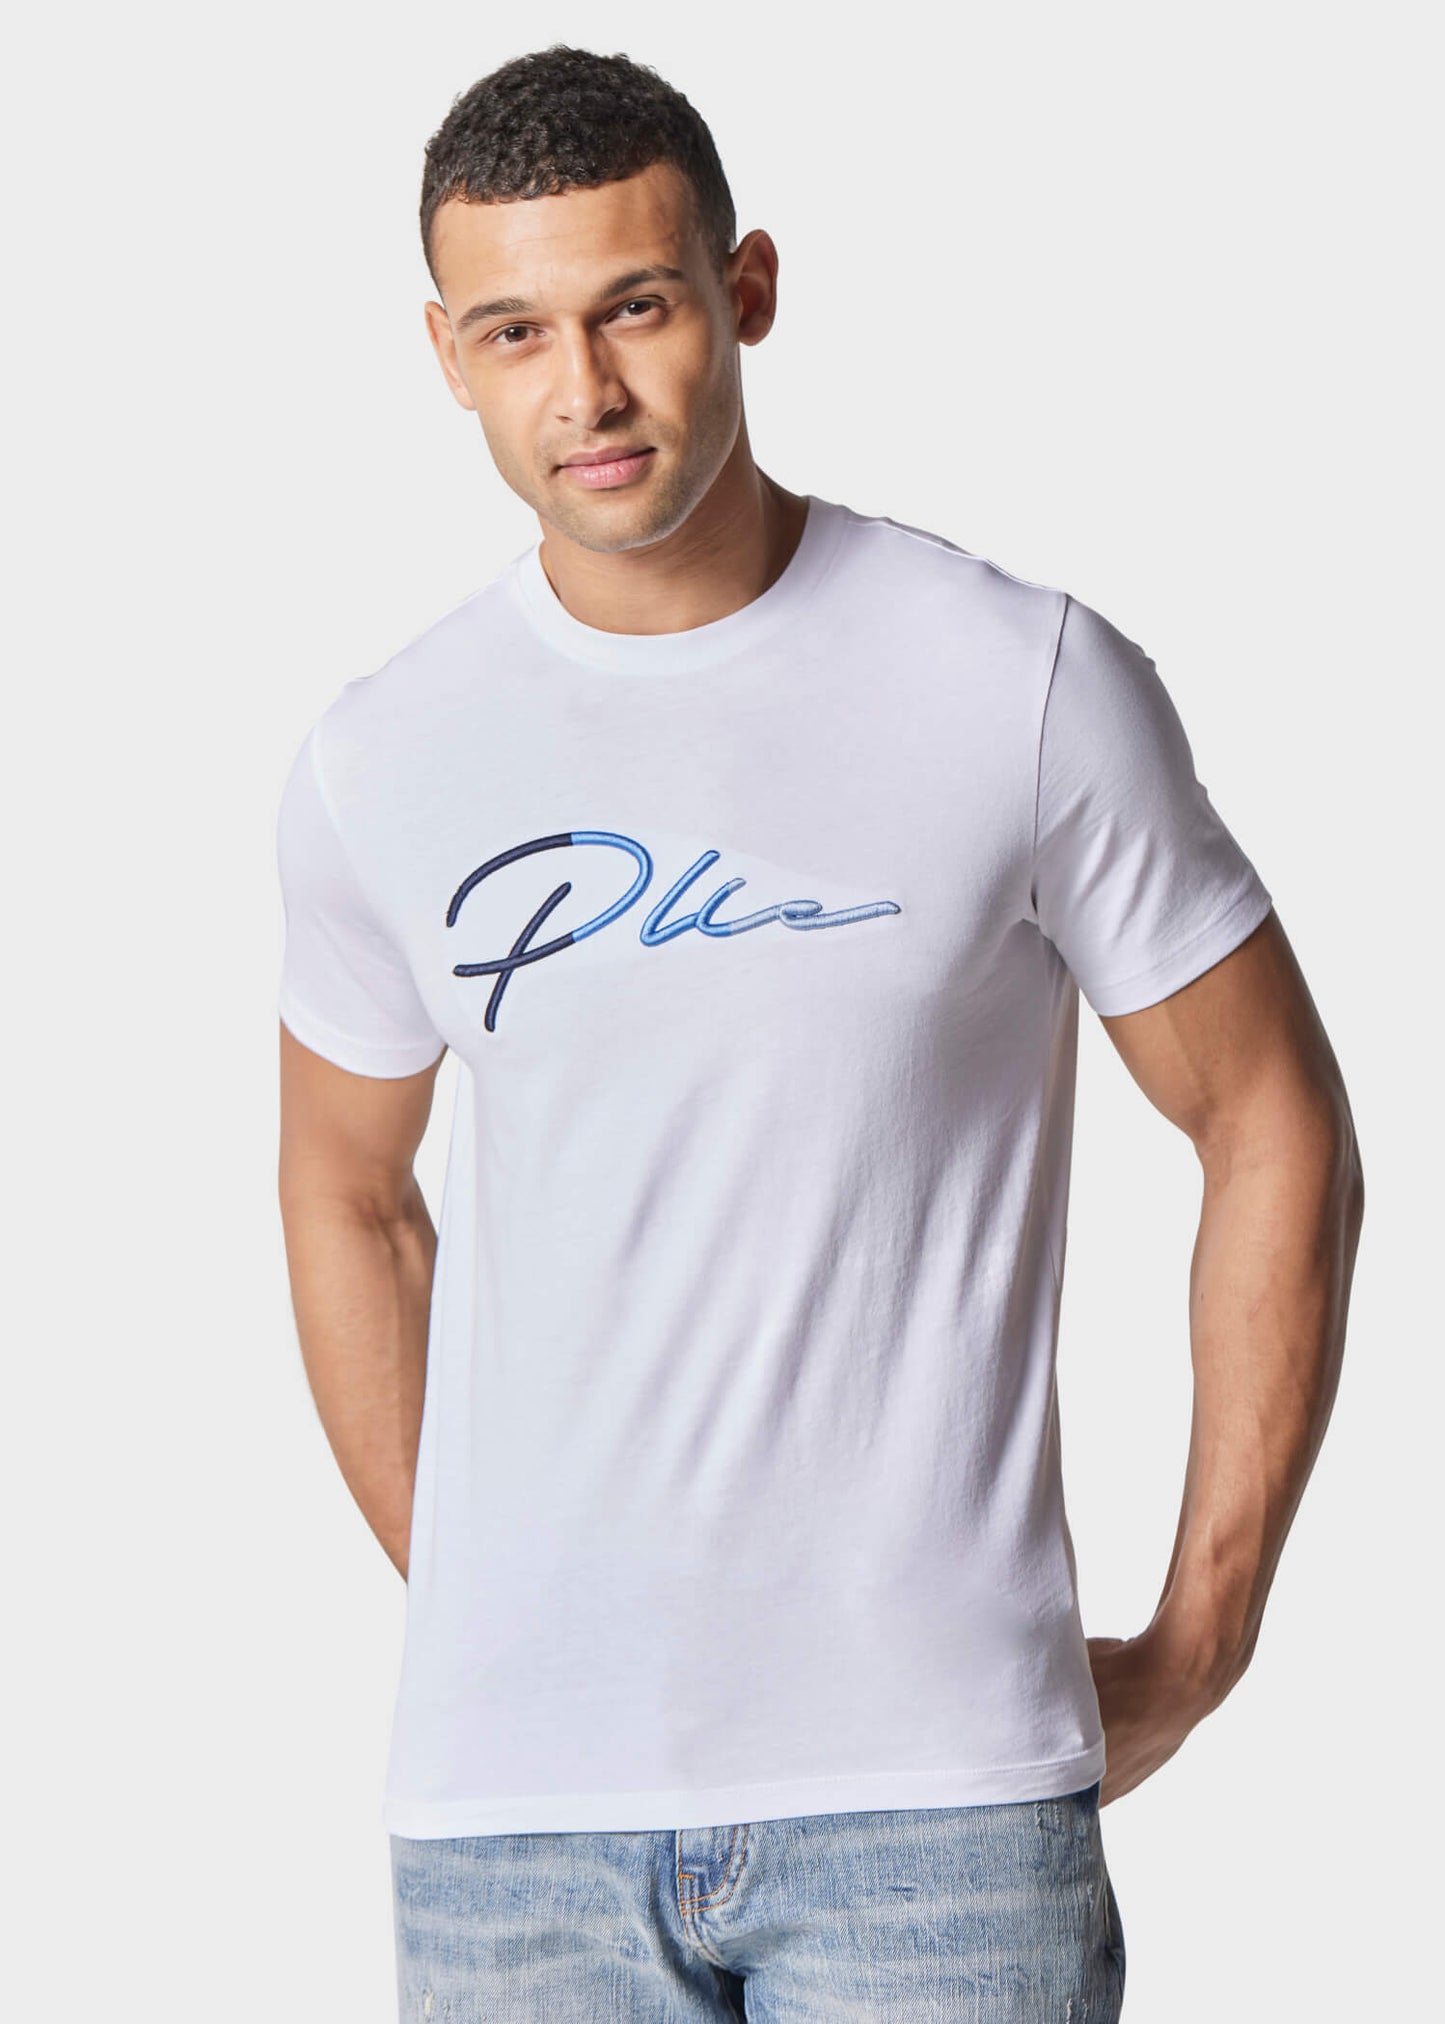 Tino White T-Shirt